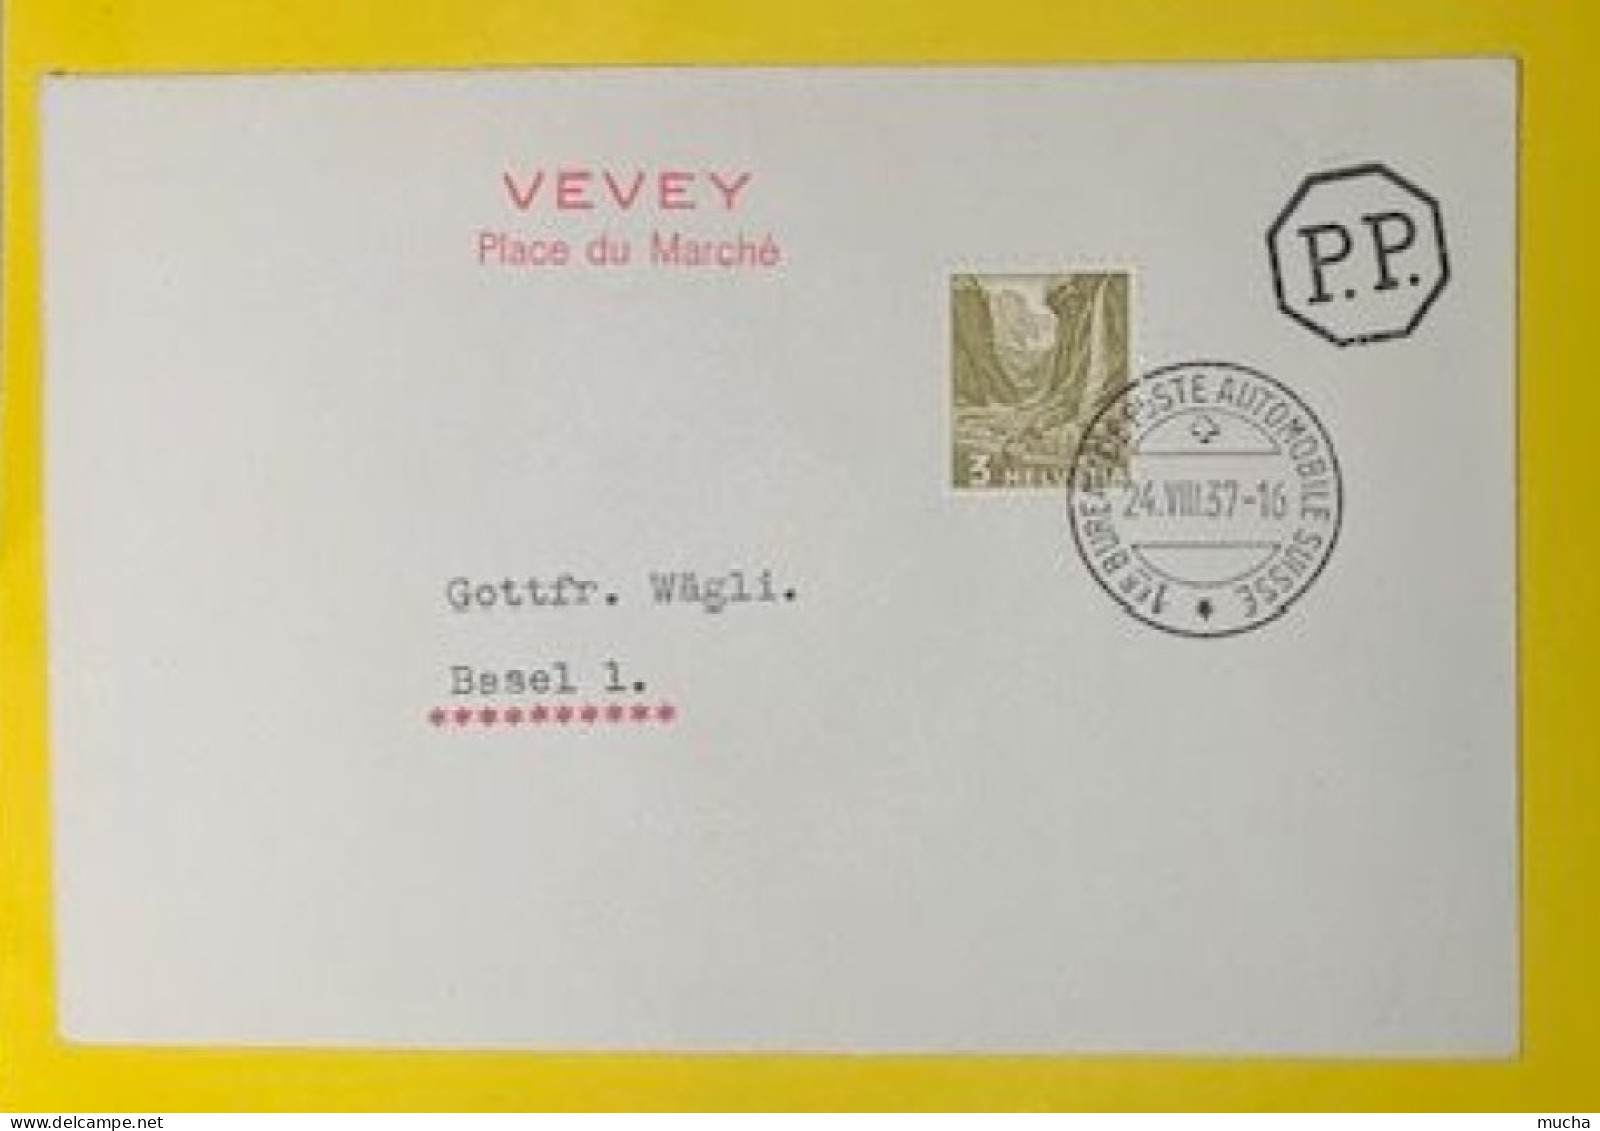 20407 - 1er Bureau De Poste Automobile 24.08.1937 Cachet Rouge Vevey Place Du Marché - Covers & Documents